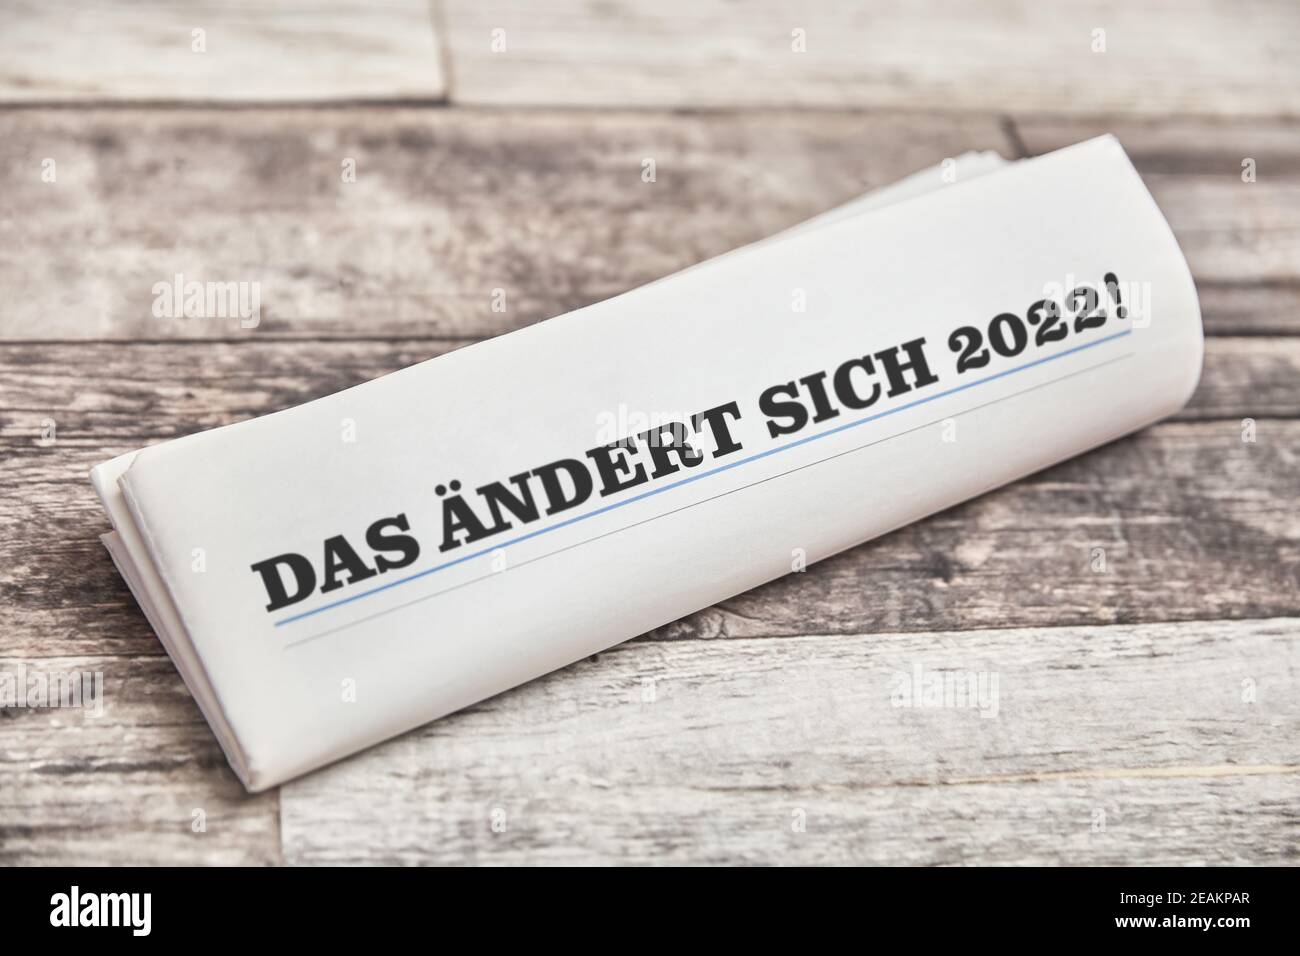 DAS ändert sich 2022! (Allemand pour: Cela va changer en 2022!) comme le titre sur la première page d'un journal plié sur une table en bois Banque D'Images